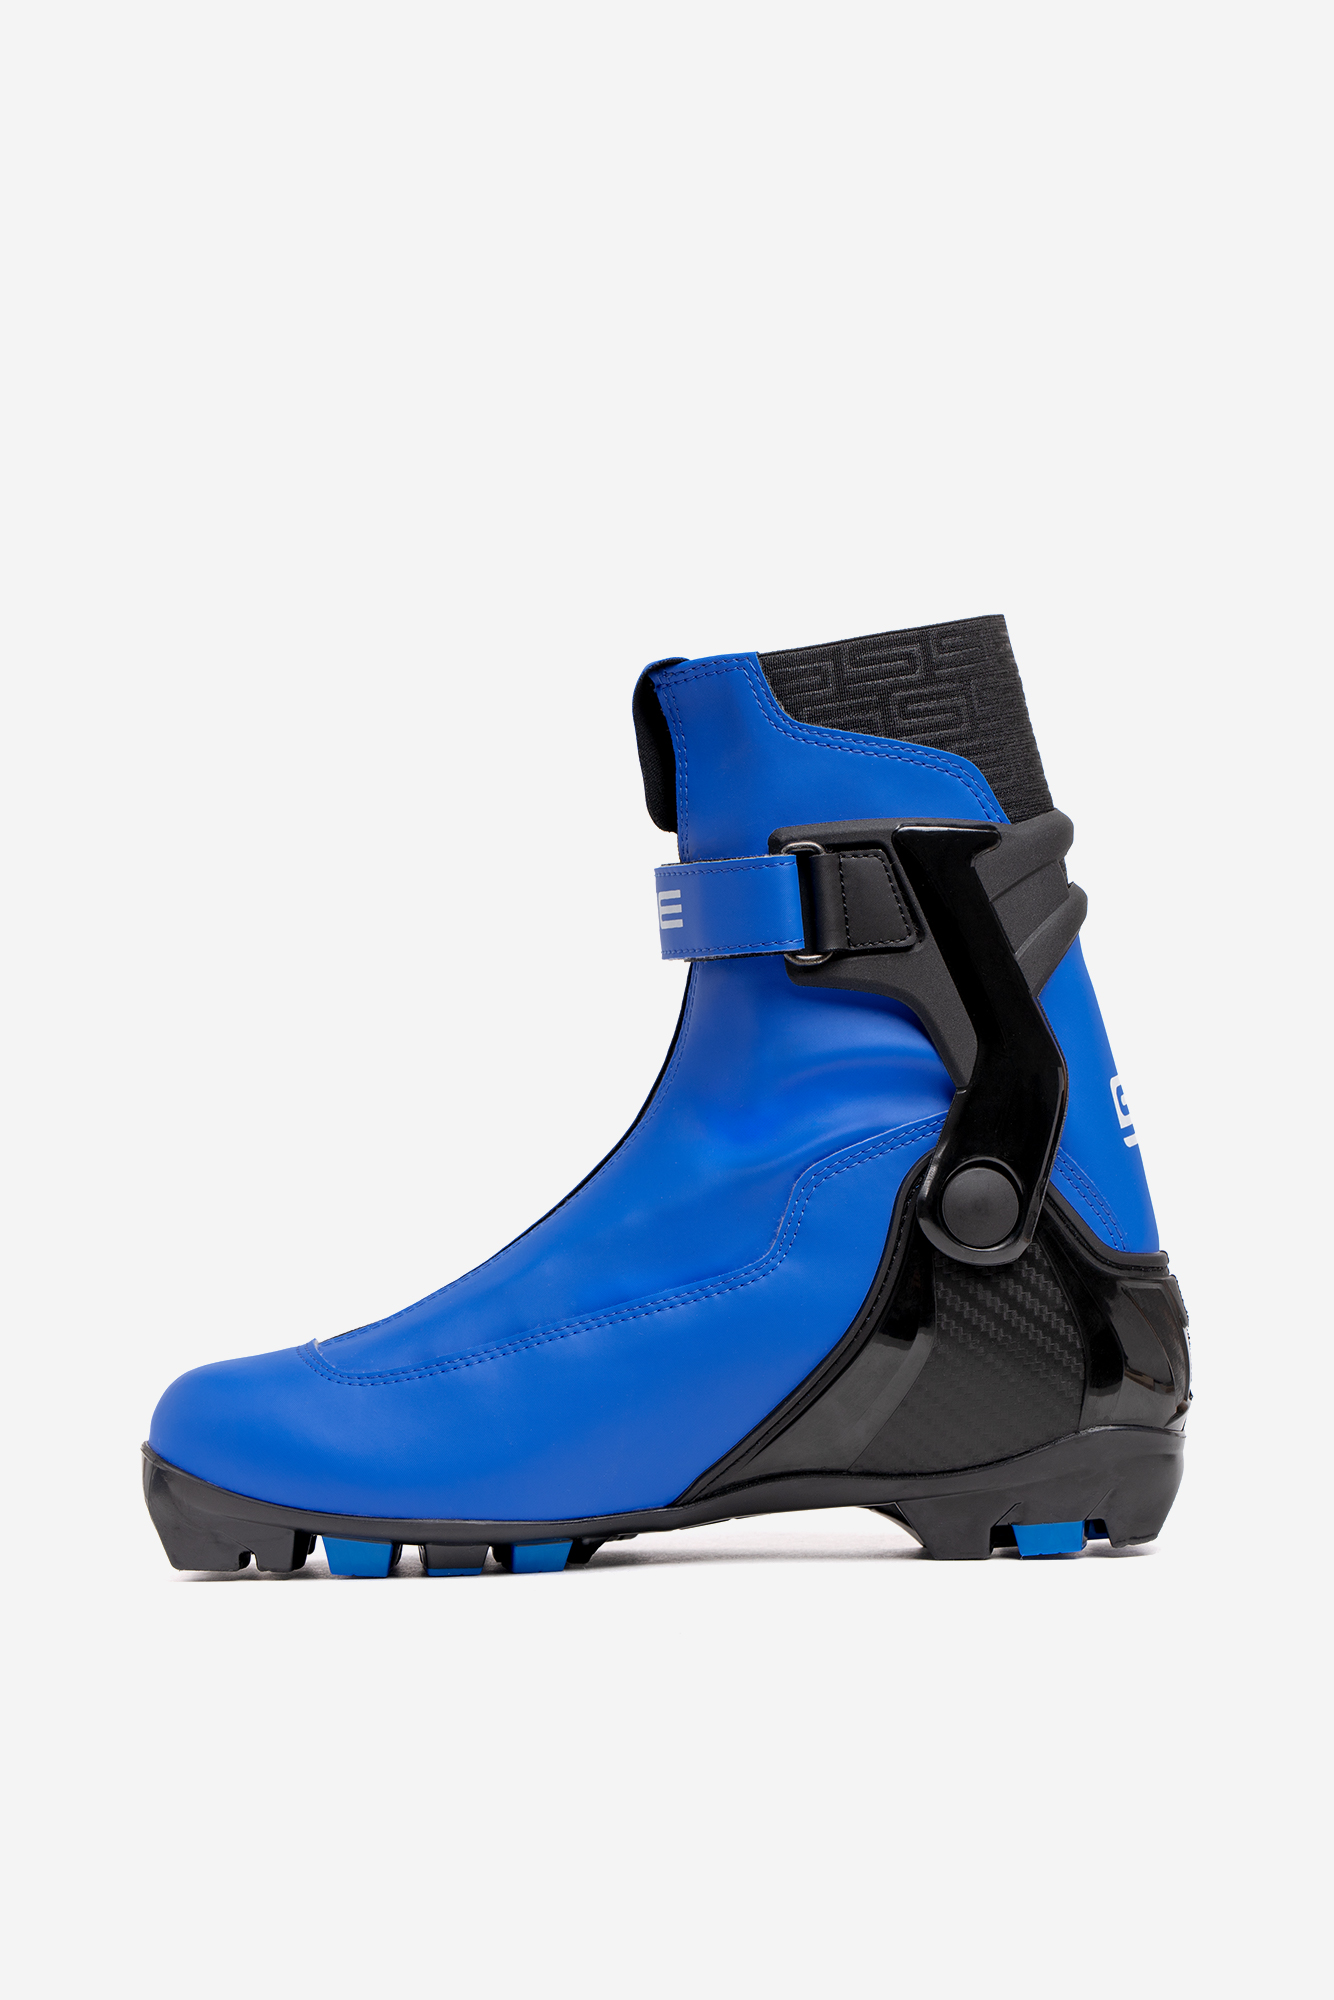 Лыжные ботинки NNN Spine RC Combi (86/1-22) синий 1334_2000